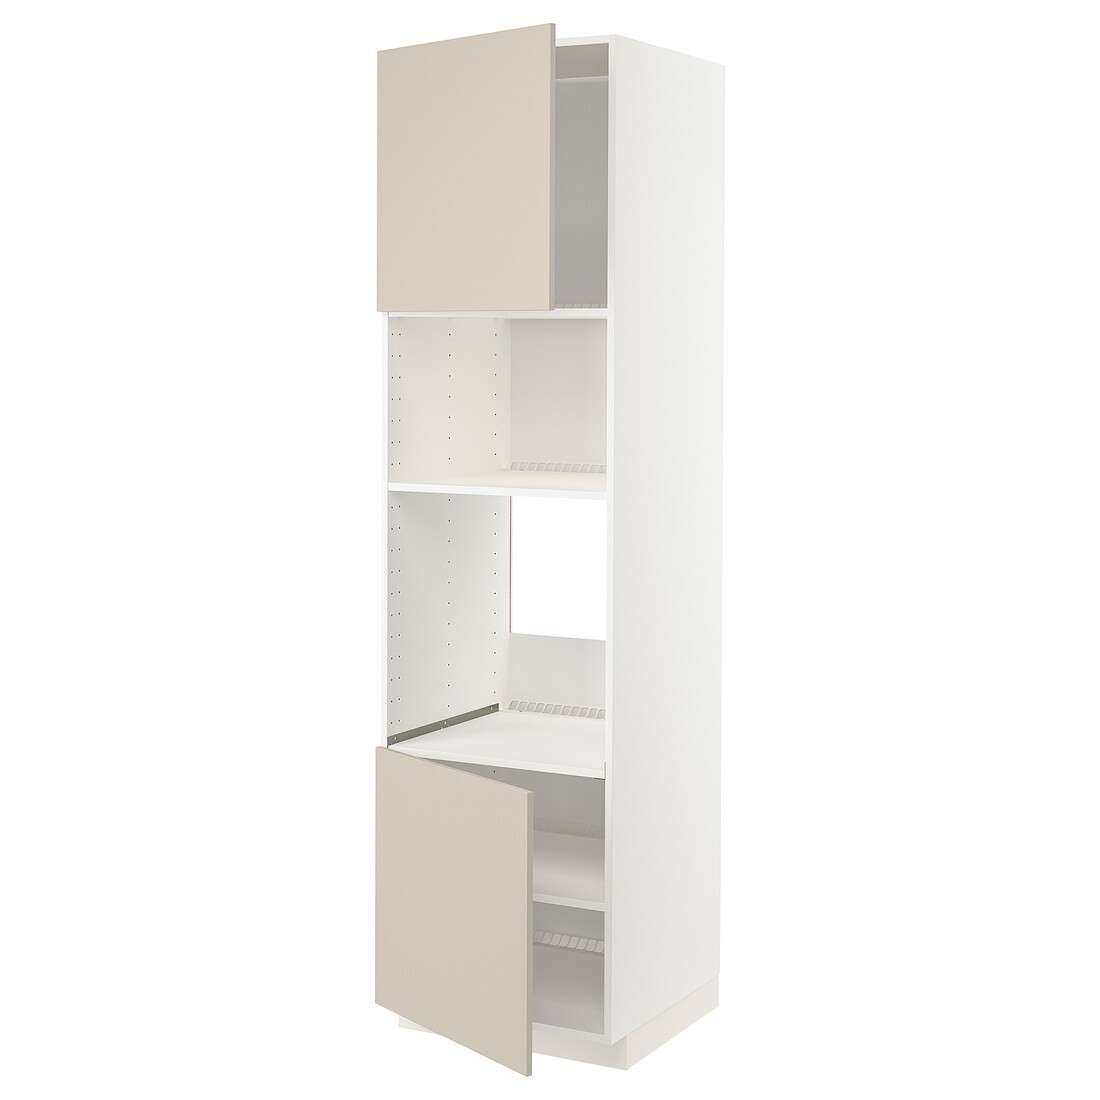 IKEA METOD МЕТОД Высокий шкаф для духовки / СВЧ, белый / Havstorp бежевый, 60x60x220 см 89466062 | 894.660.62